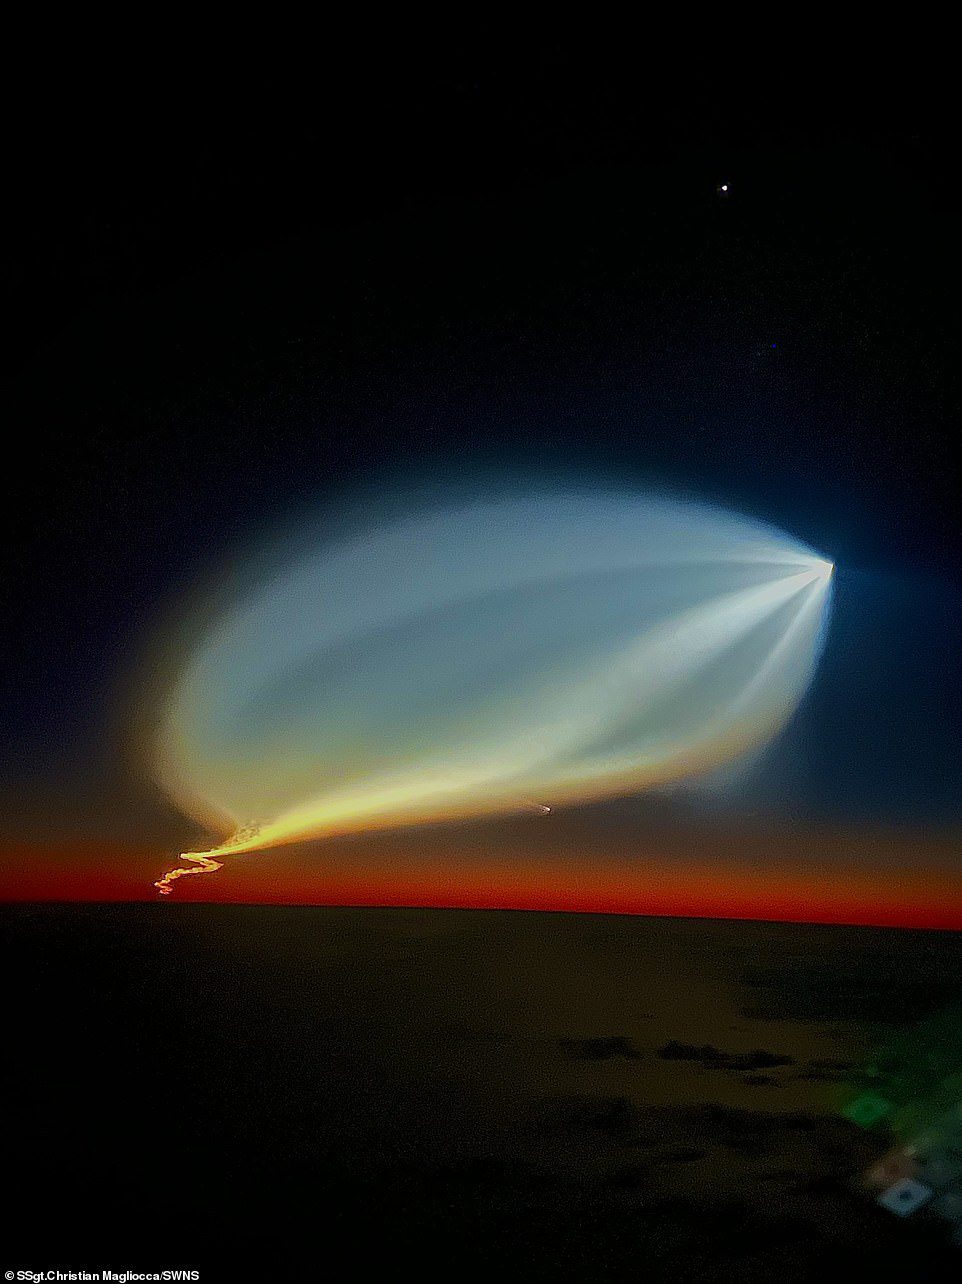 素晴らしい: 奇妙で UFO のような外観をしているかもしれませんが、空に咲く光は、実際には SpaceX ロケットの打ち上げによる放射性降下物の一部です。